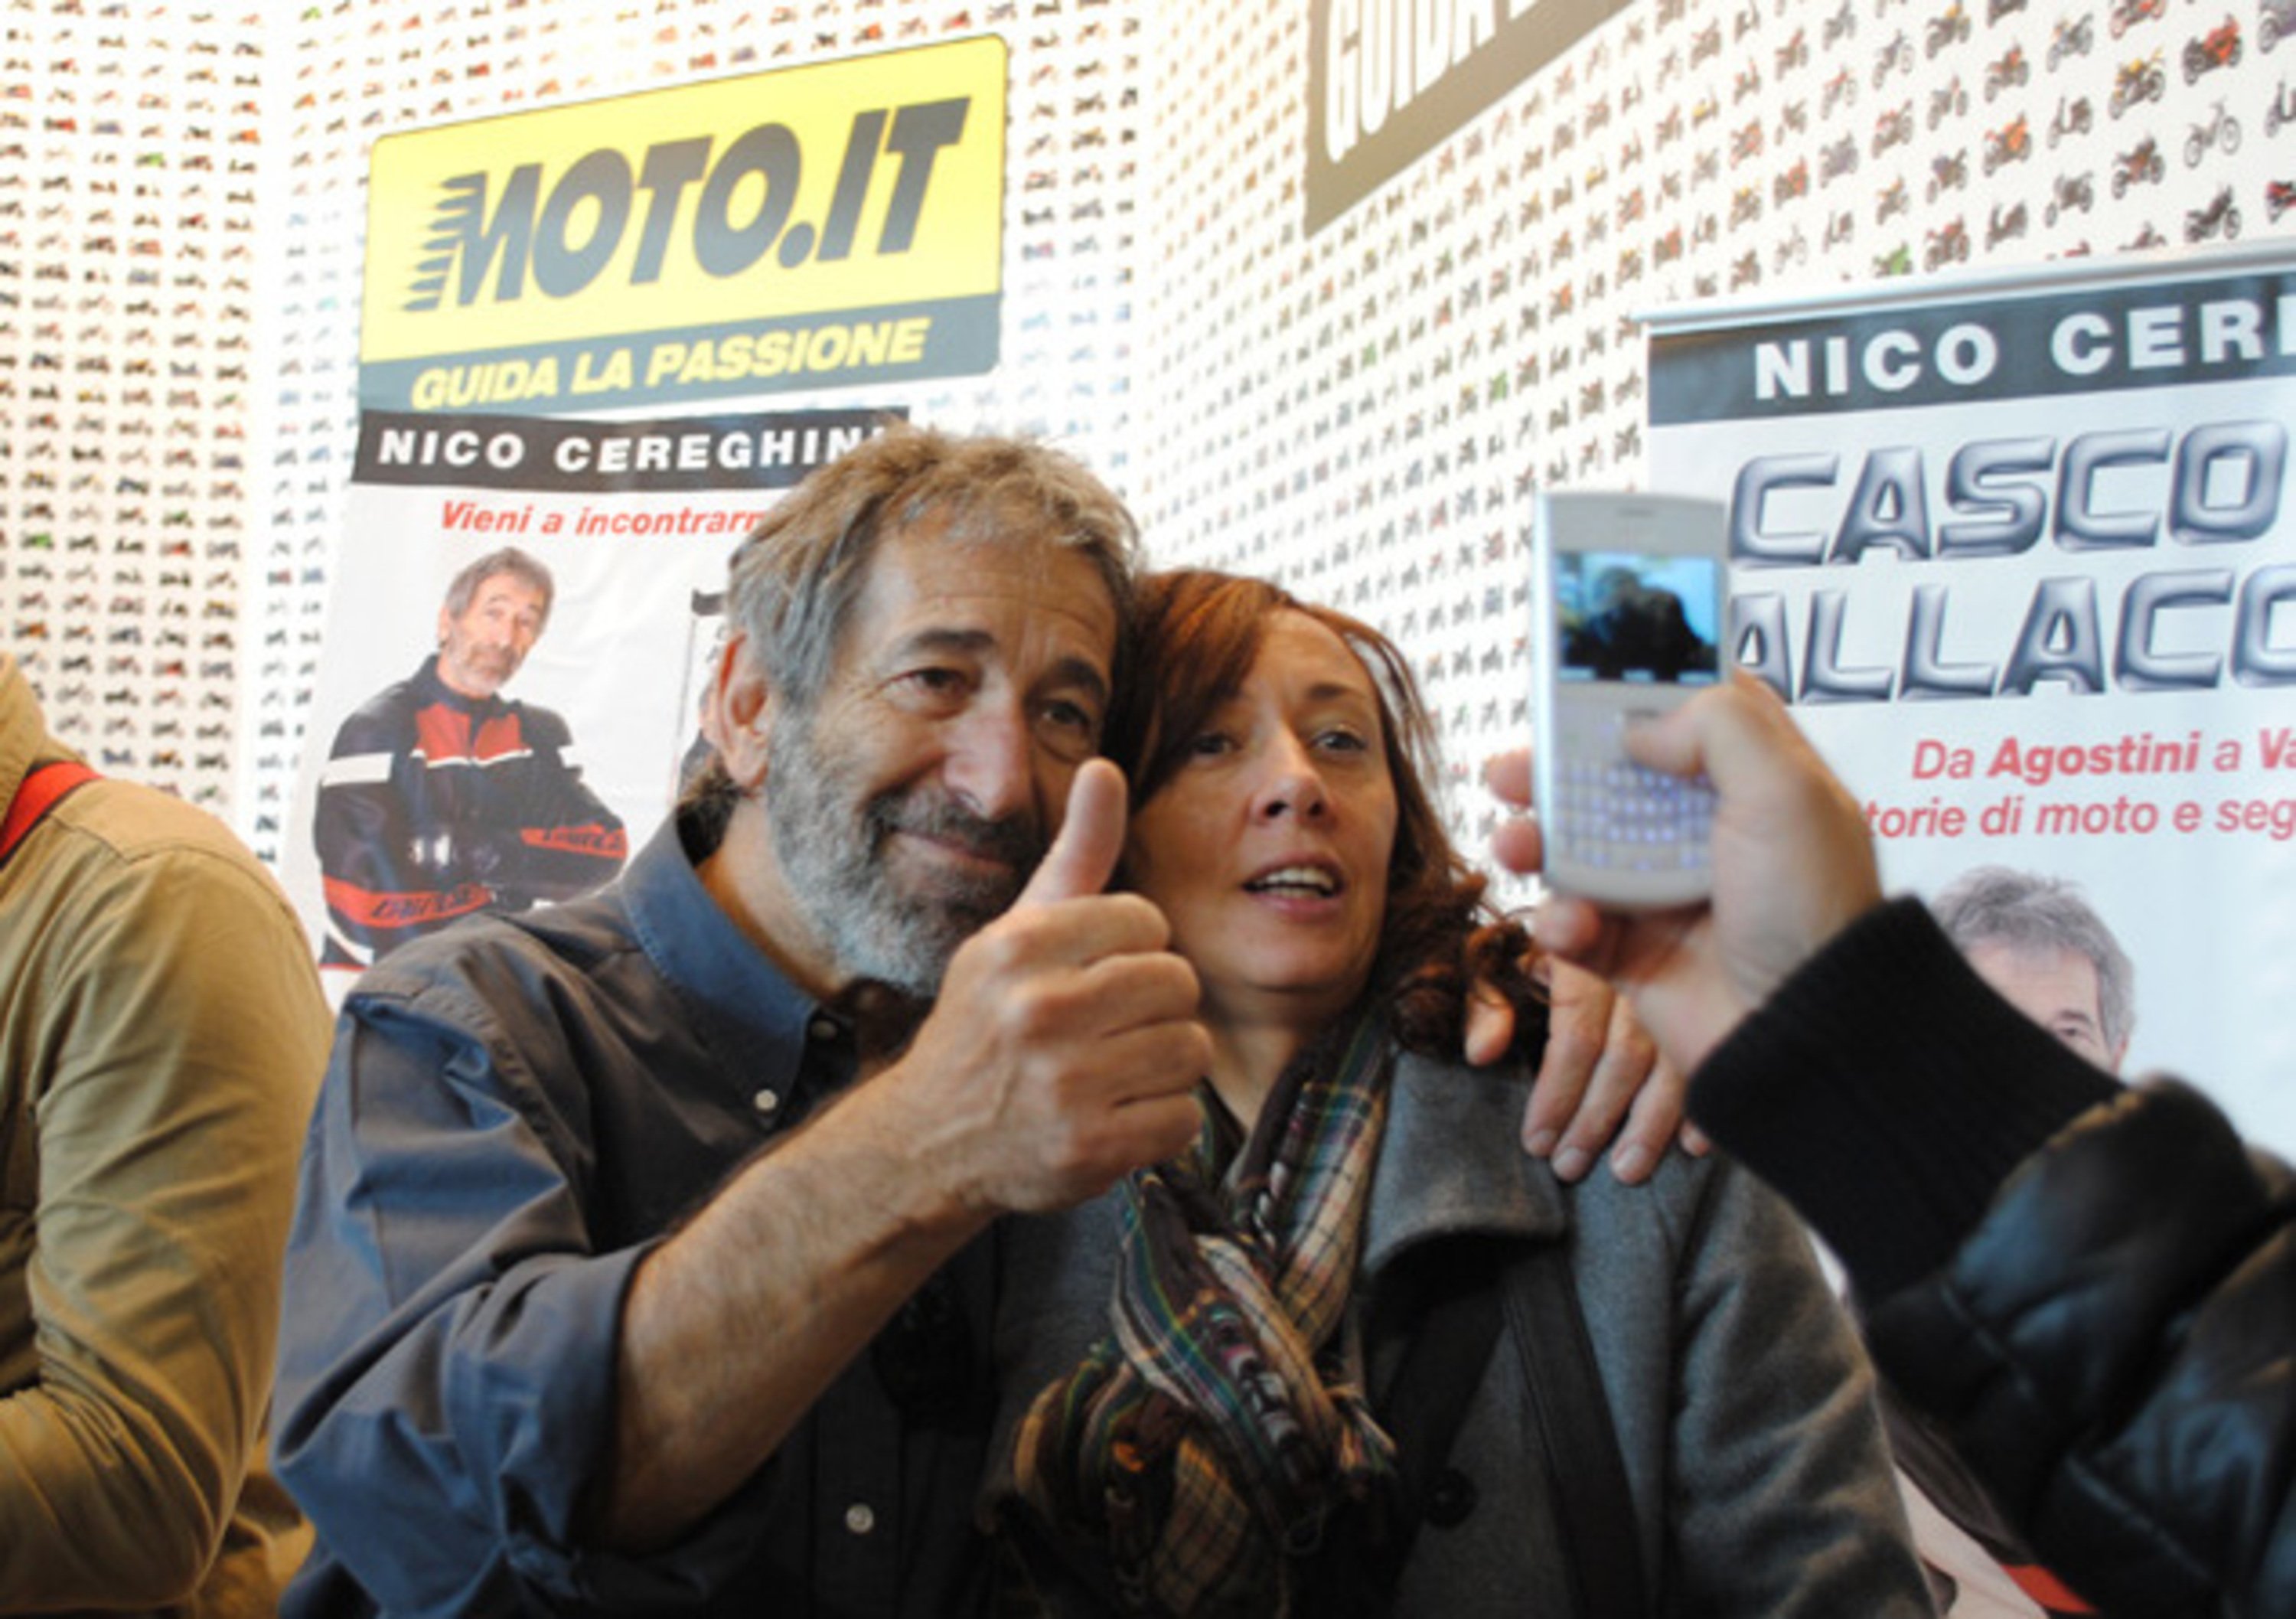 Nico Cereghini vi aspetta allo stand EICMA di Moto.it